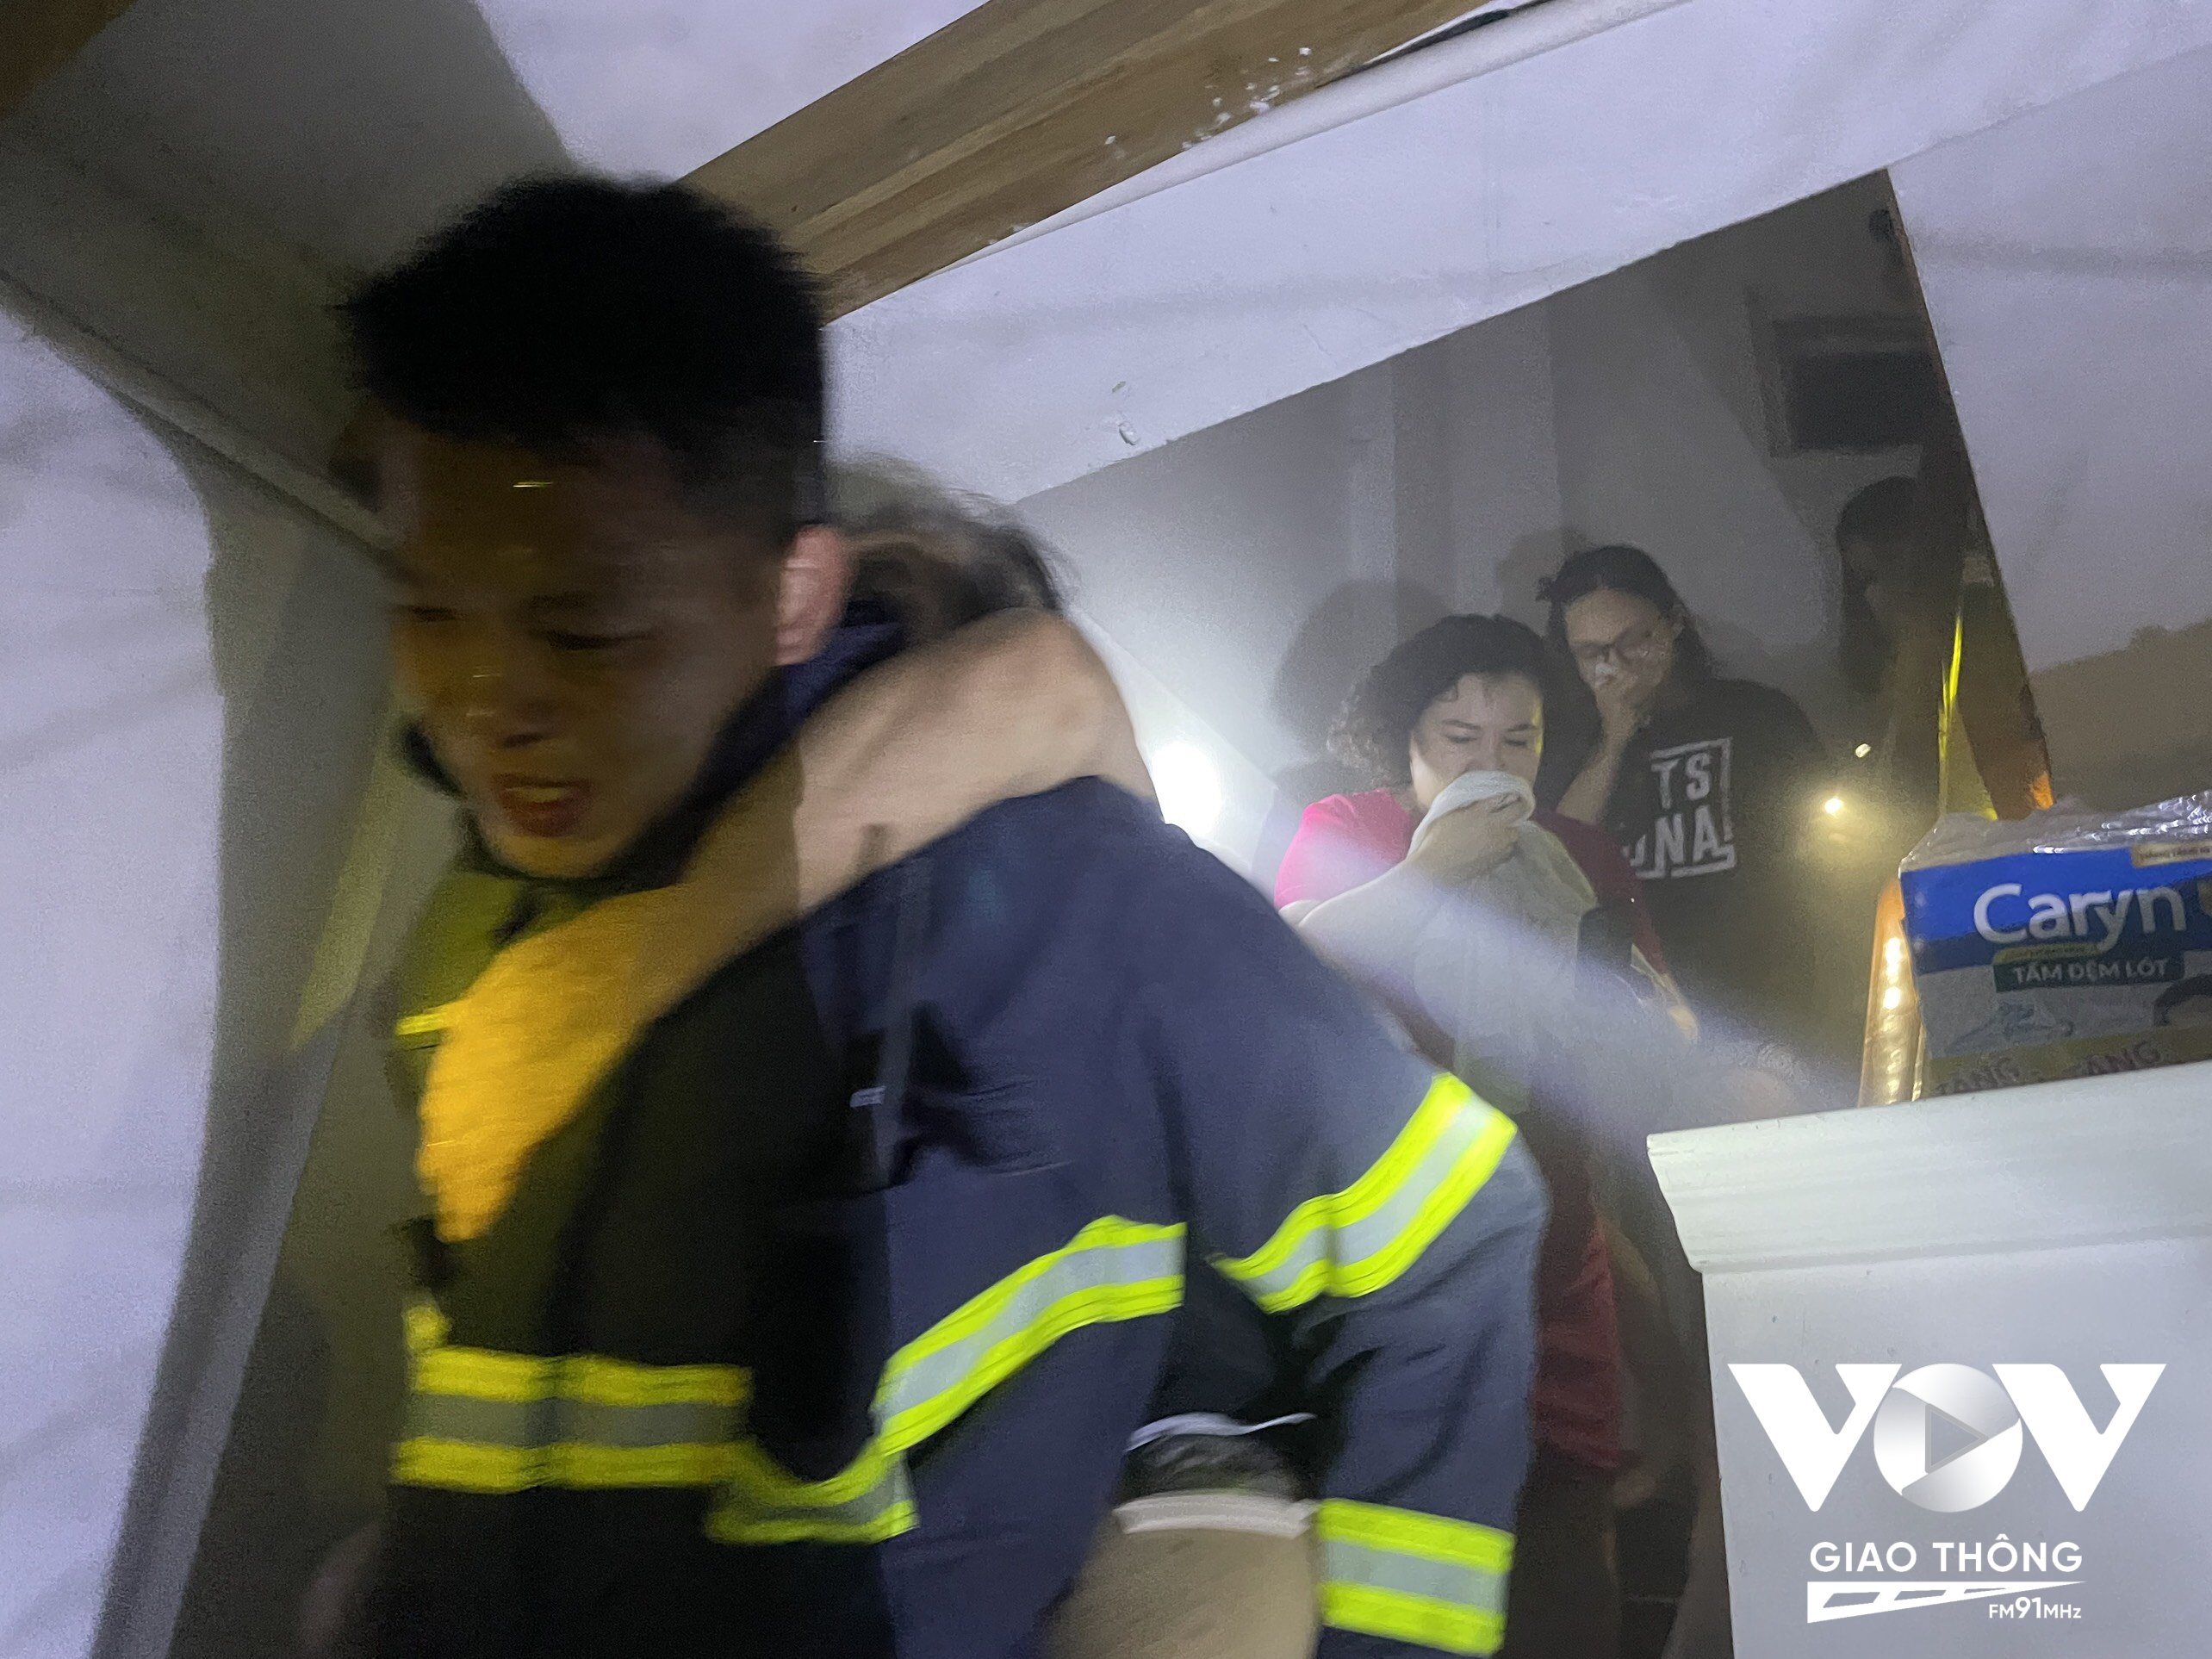 Lực lượng PCCC triển khai hướng dẫn và đưa 6 người dân trong gia đình bị mắc kẹt tại tầng thường thoát ra ngoài an toàn